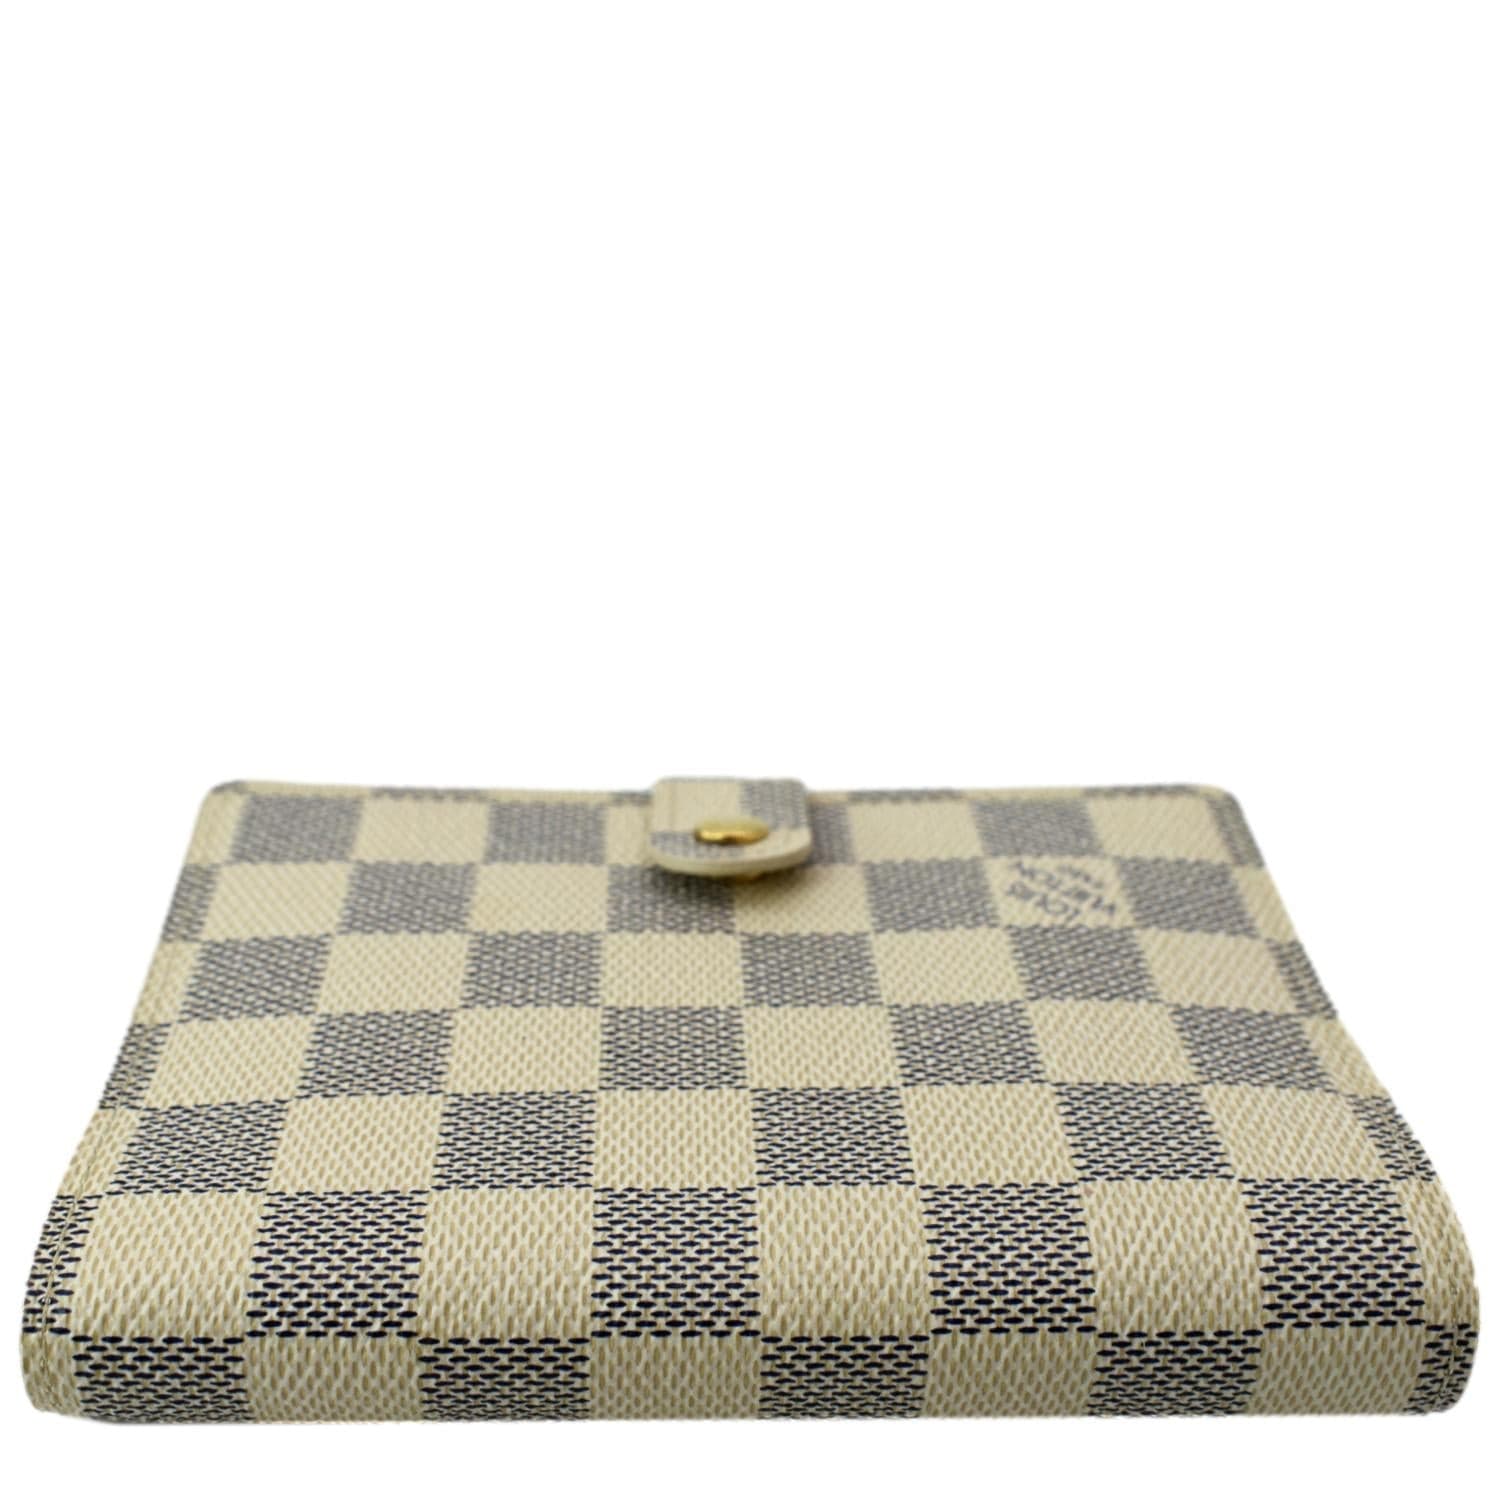 Çanta “atdhetare” e Louis Vuitton, kushton 9900 dollarë